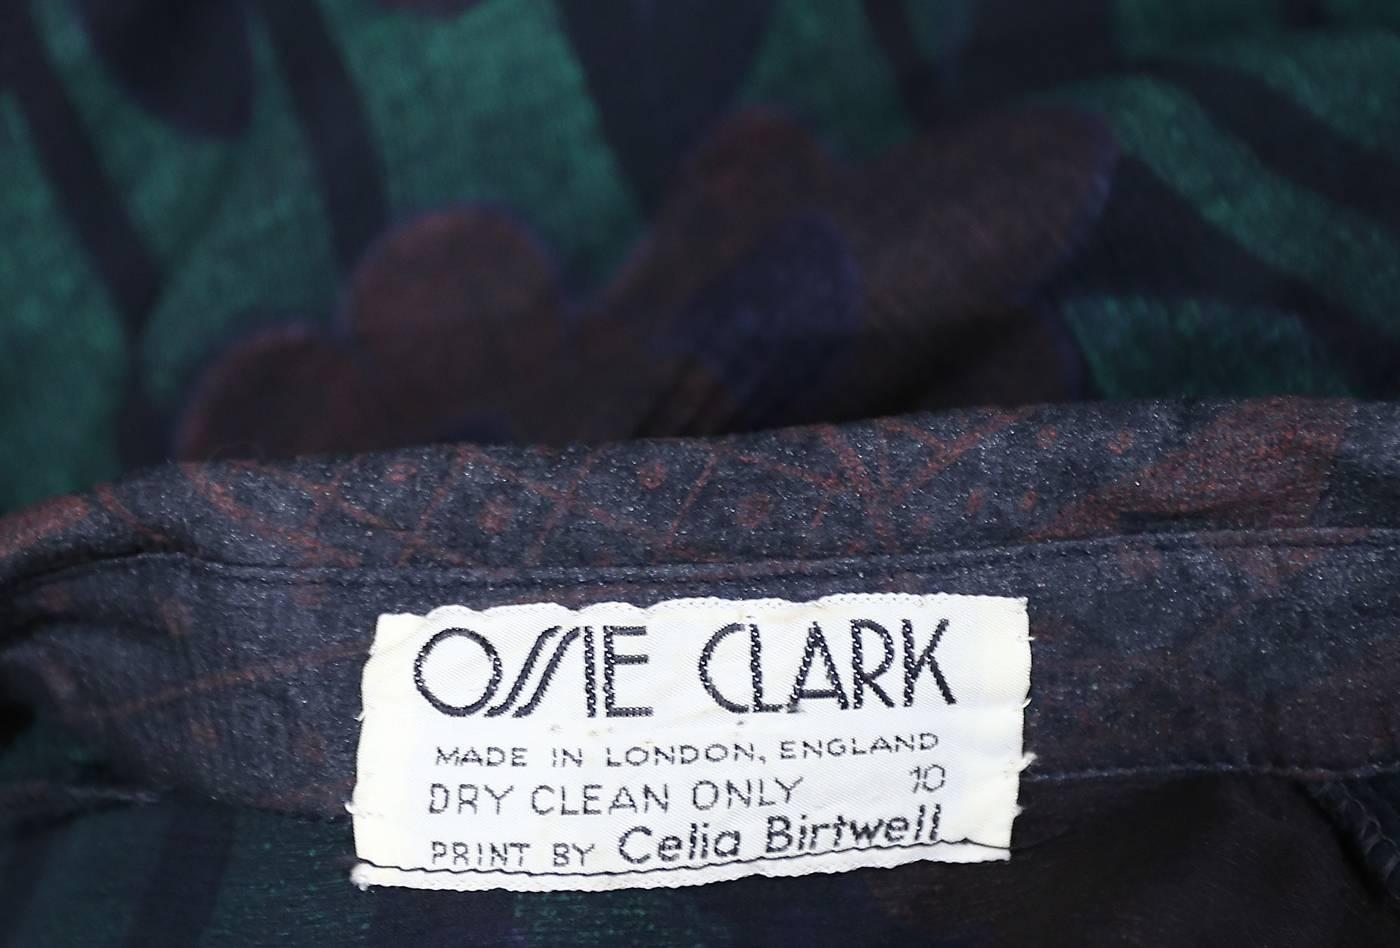 Ossie Clark extraordinary chiffon dress with Celia Birtwell print, c. 1968 - 69 3